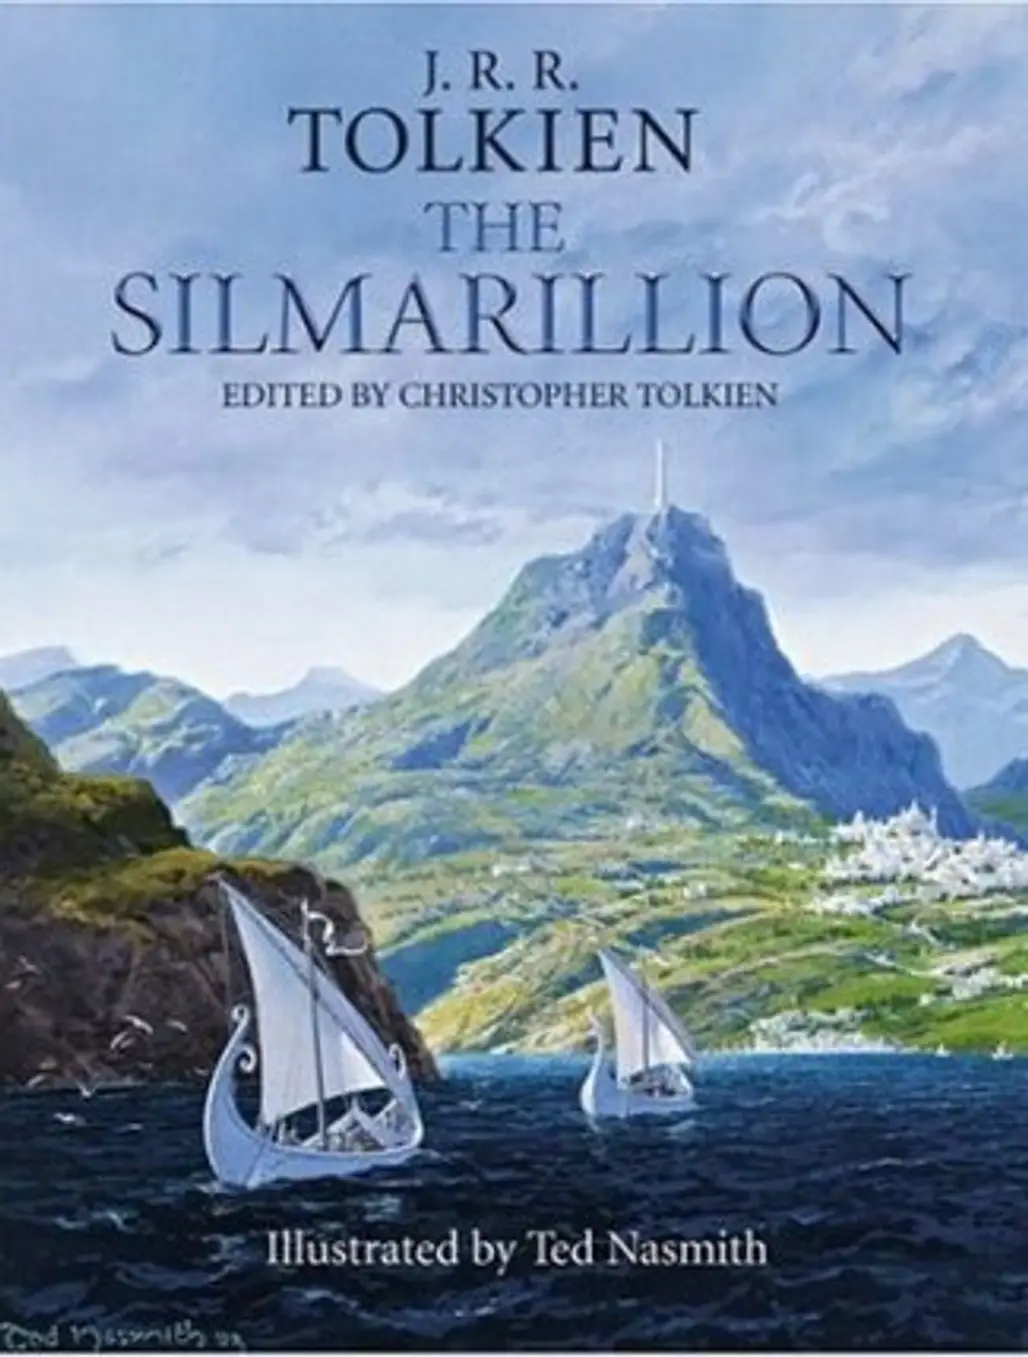 Hobbit and Silmarillion by J.R.R Tolkien